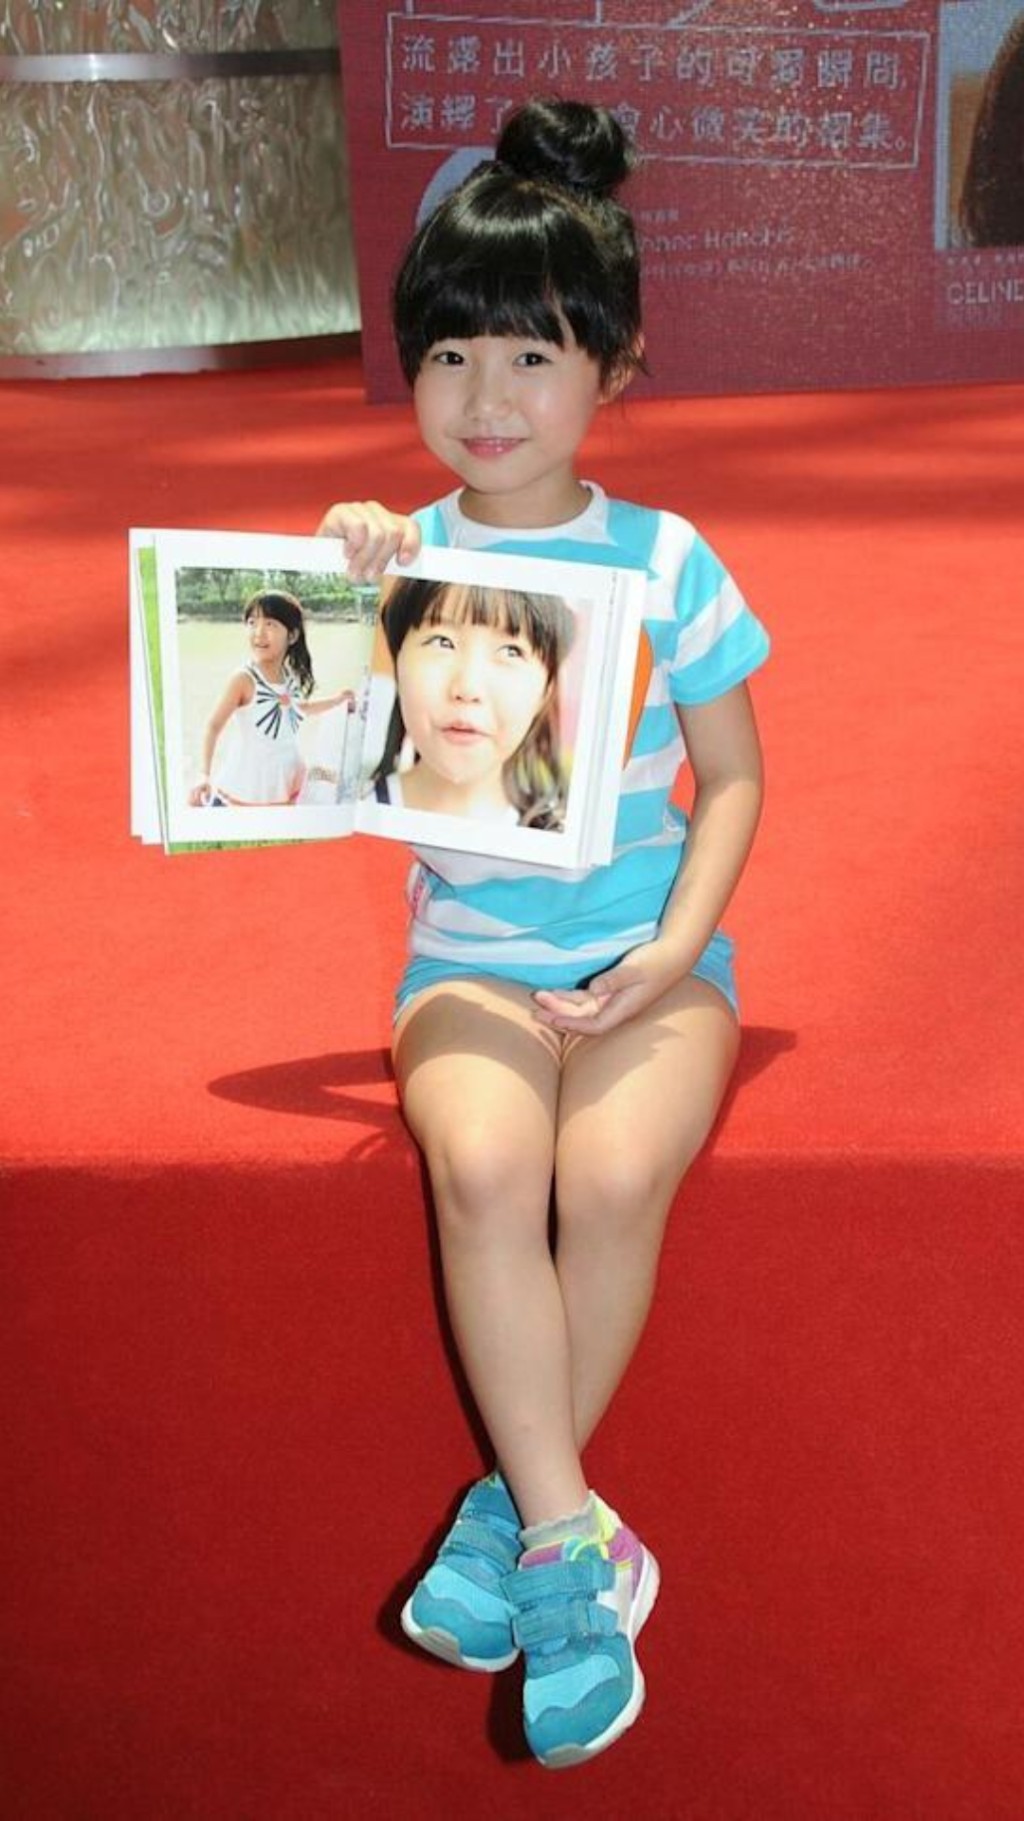 当年因拍摄美心广告走红的童星Celine杨铠凝，今年已经14岁。